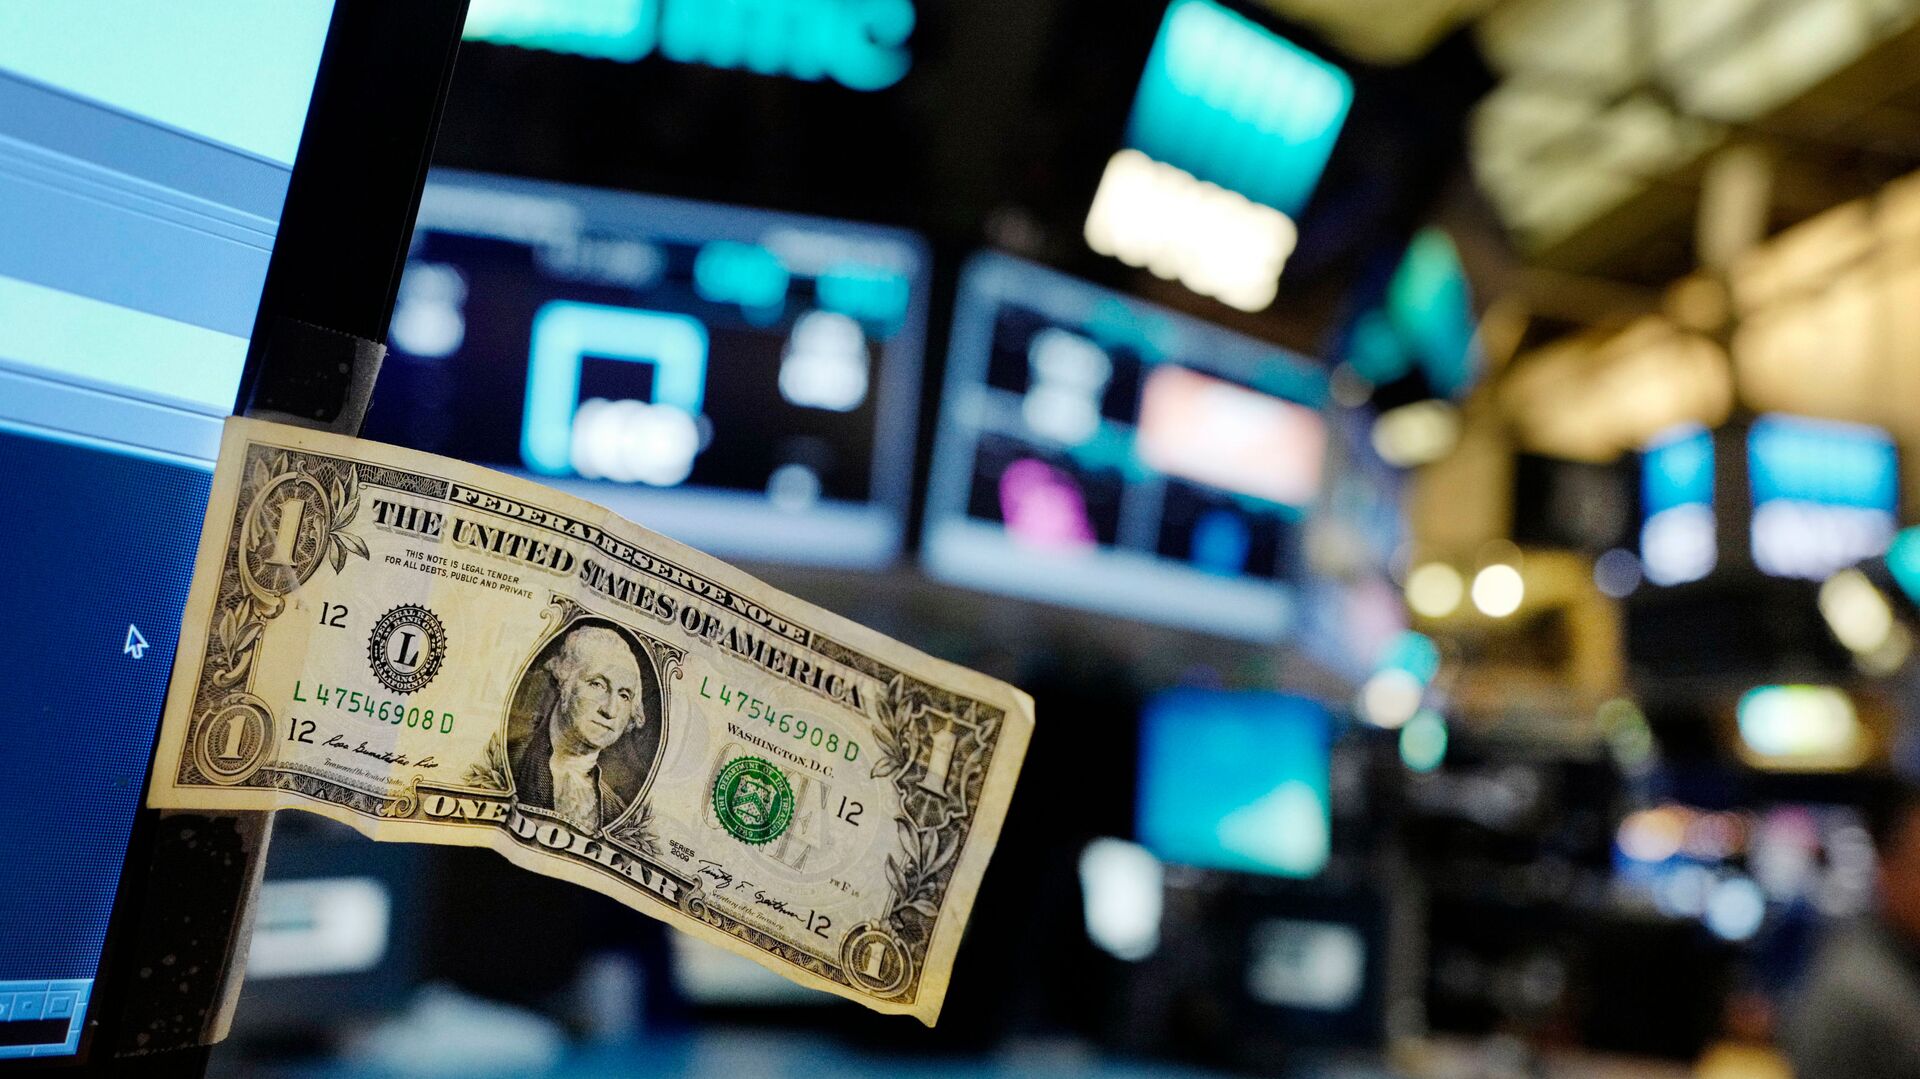 Долларовая банкнота прикреплена к экрану компьютера трейдера на Нью-Йоркской фондовой бирже - РИА Новости, 1920, 12.11.2020